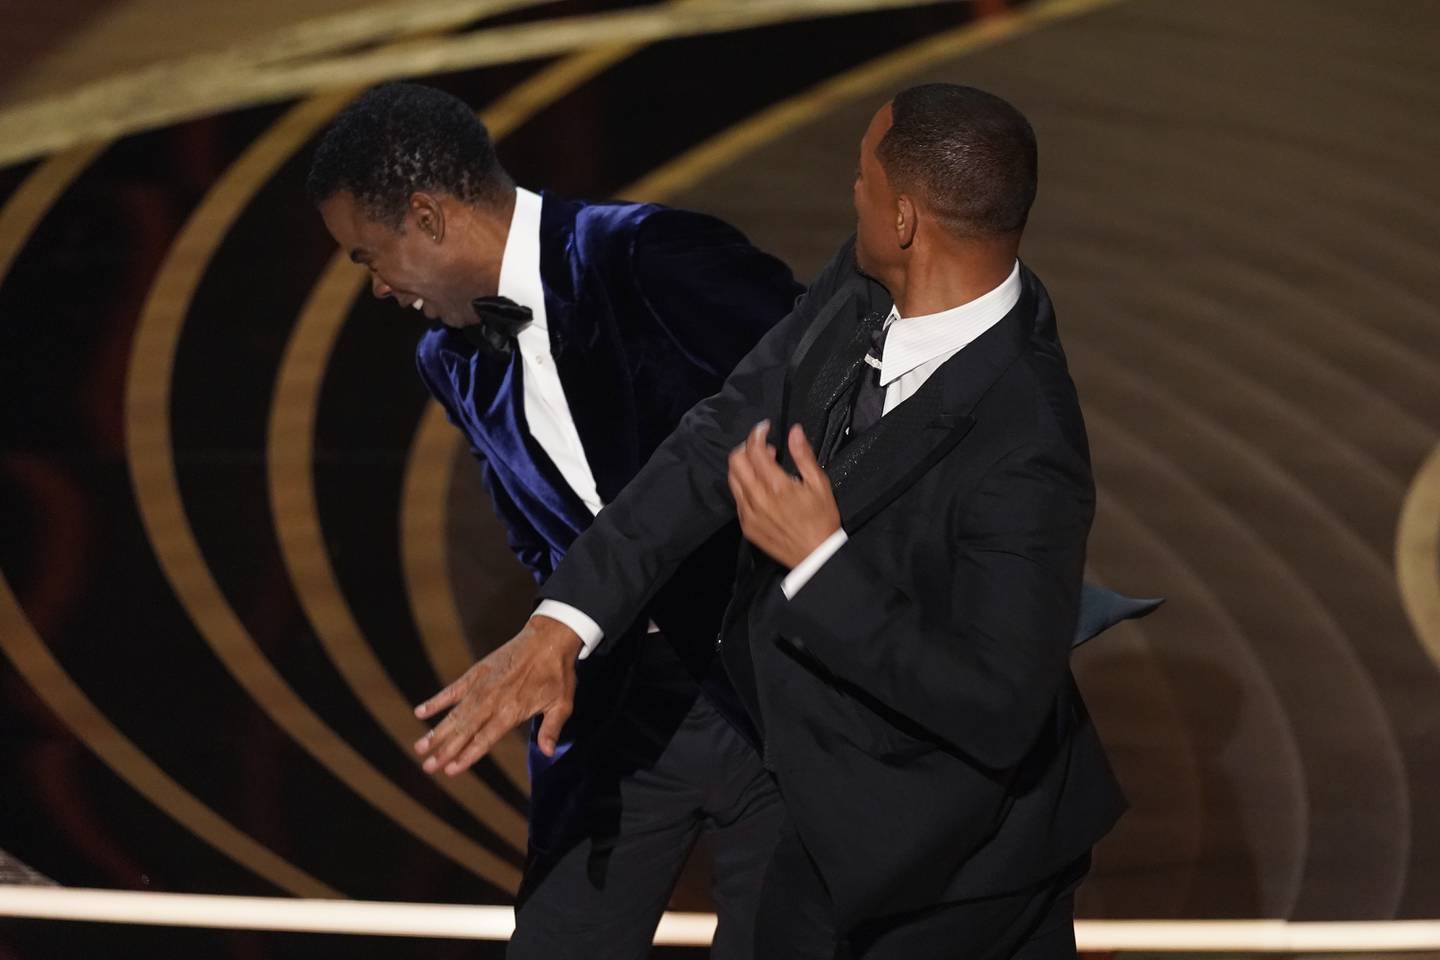 Nattens mest omdiskuterte øyeblikk skjedde da Will Smith ga Chris Rock et slag i ansiktet. Foto: Chris Pizzello / AP / NTB